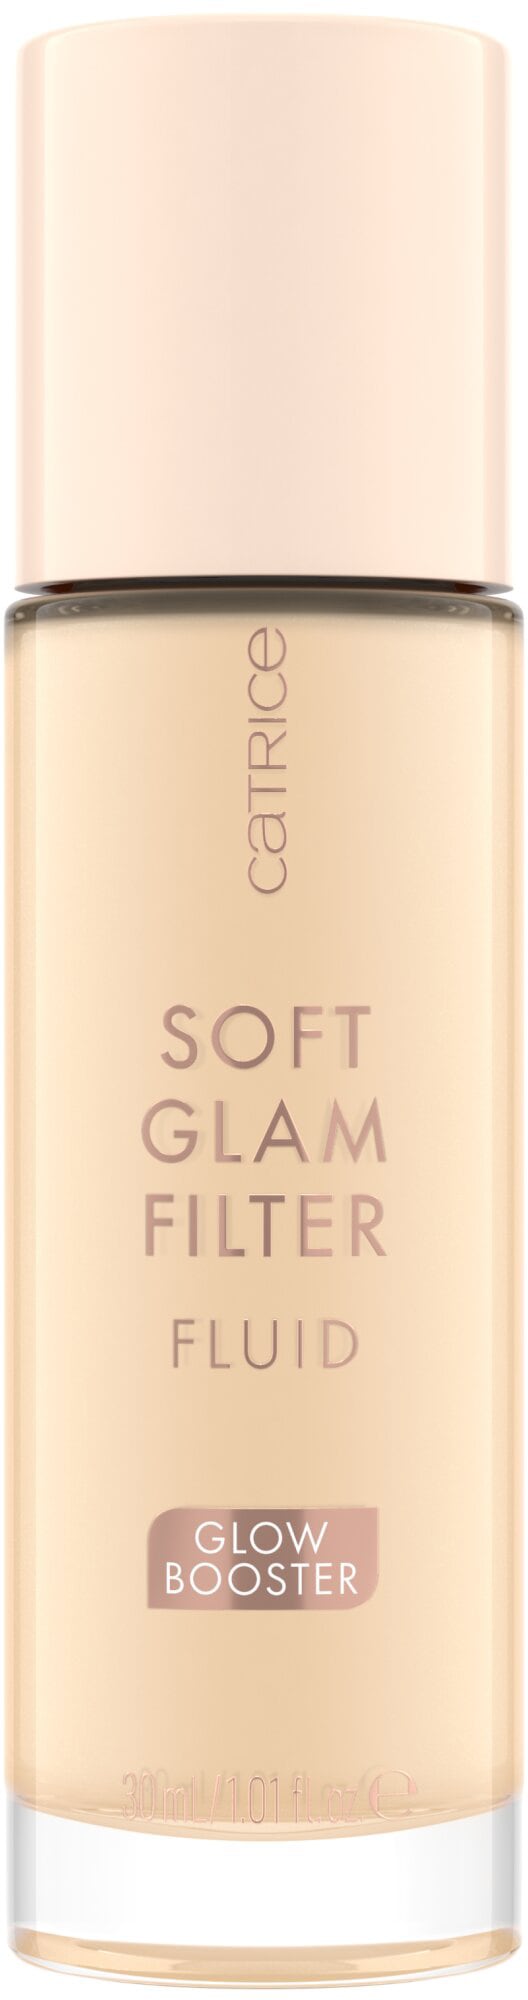 bei Filter Glam »Soft Catrice kaufen (Set) Fluid«, OTTO Primer